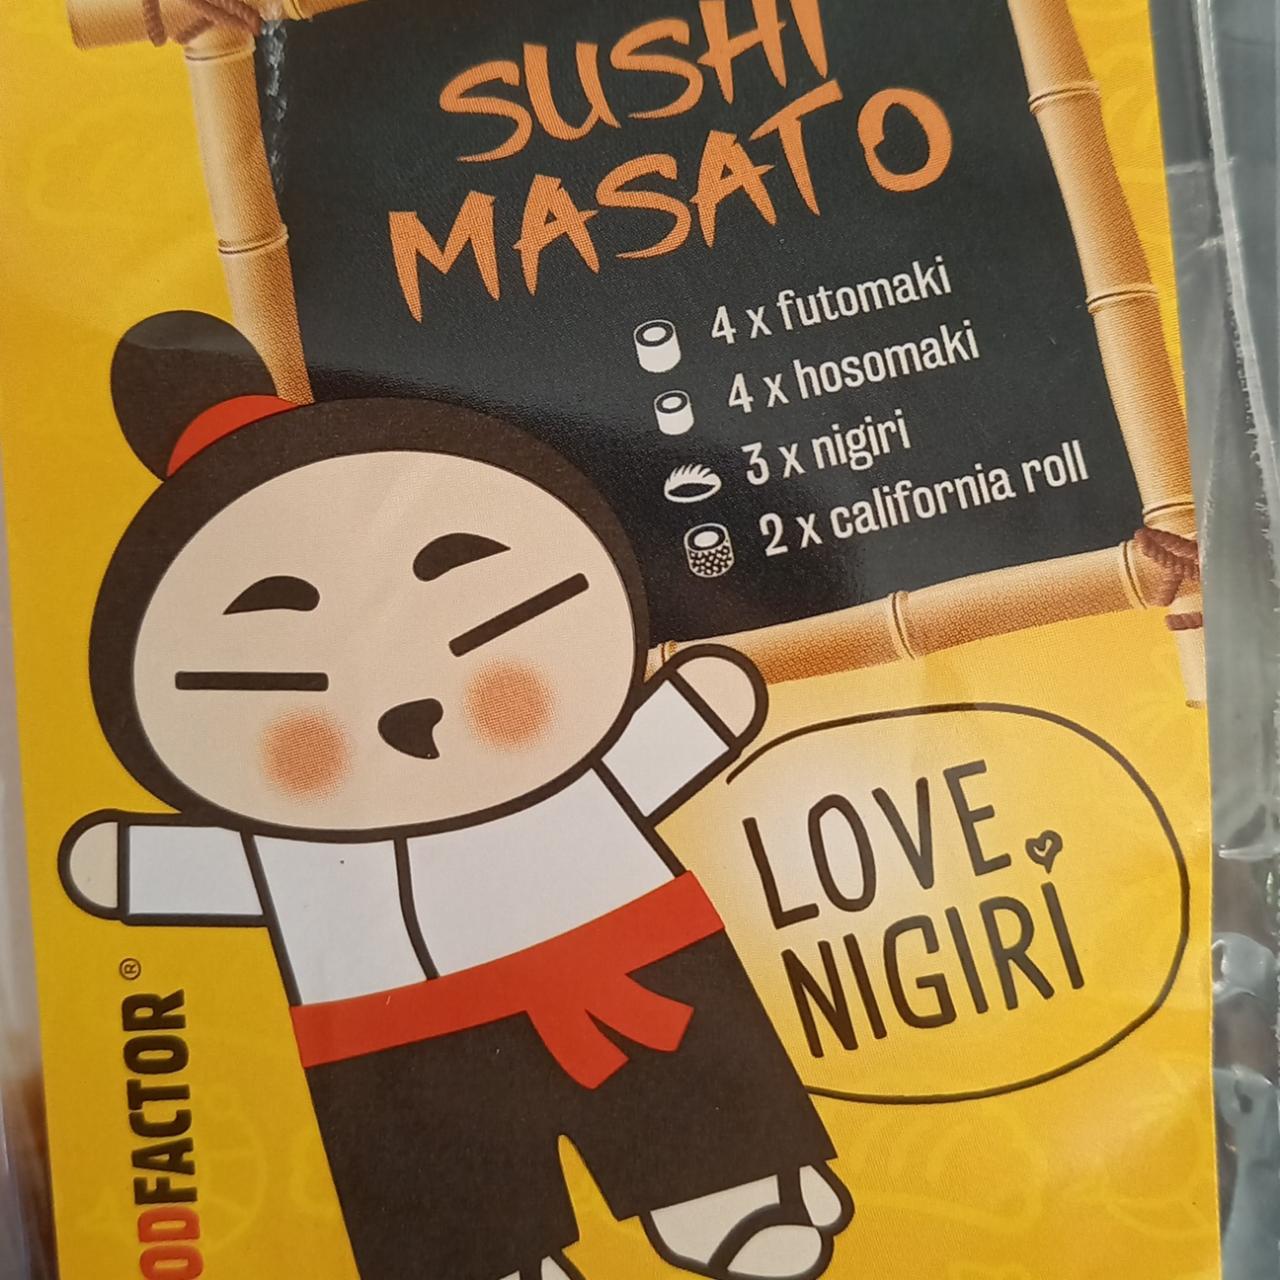 Fotografie - shisu masato sushi